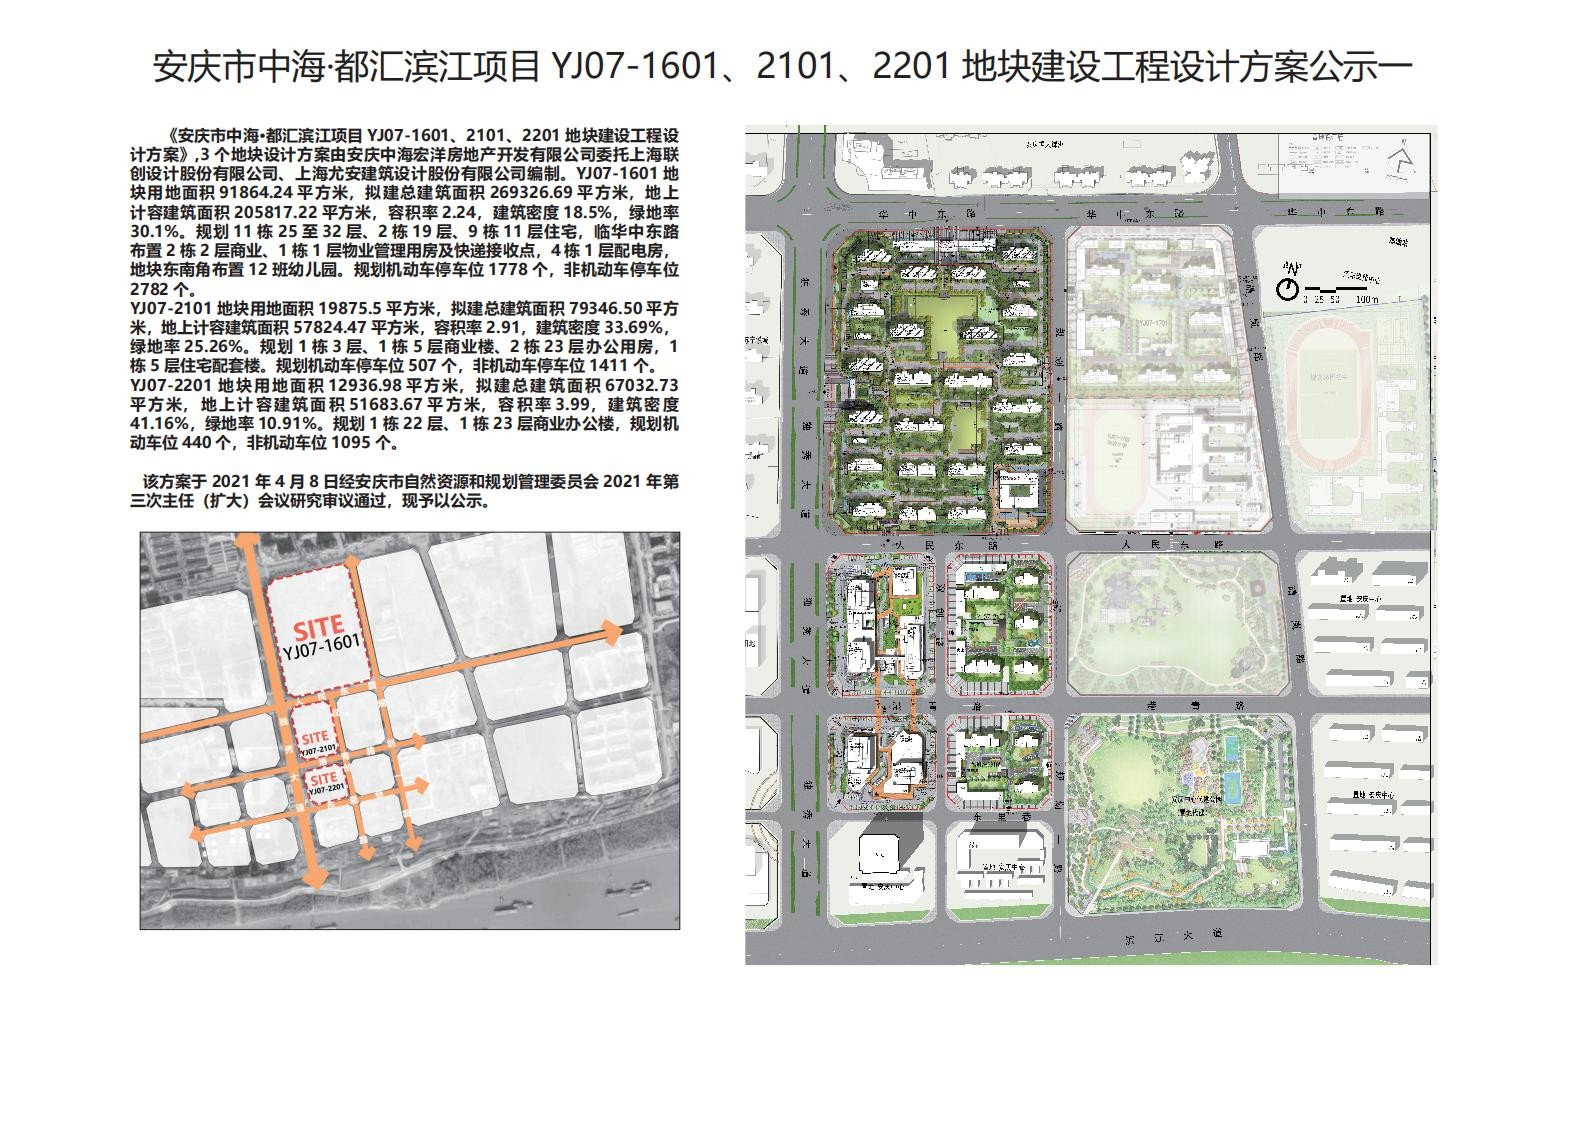 安庆市中海·都汇滨江项目YJ07-1601、2101、2201地块建设工程设计方案公示公告